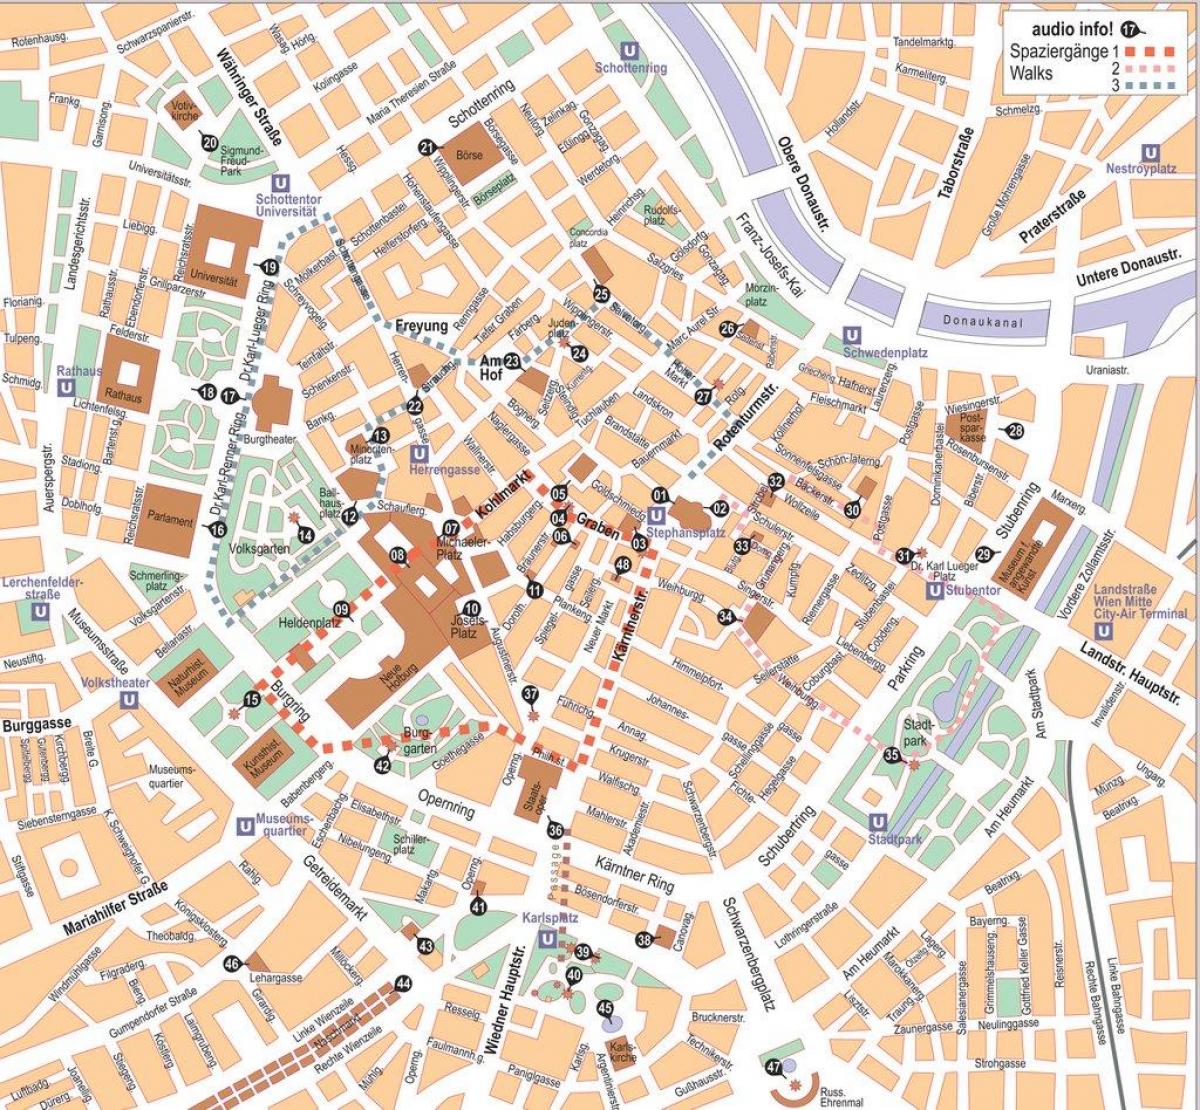 Vienna Áo trung tâm thành phố, bản đồ